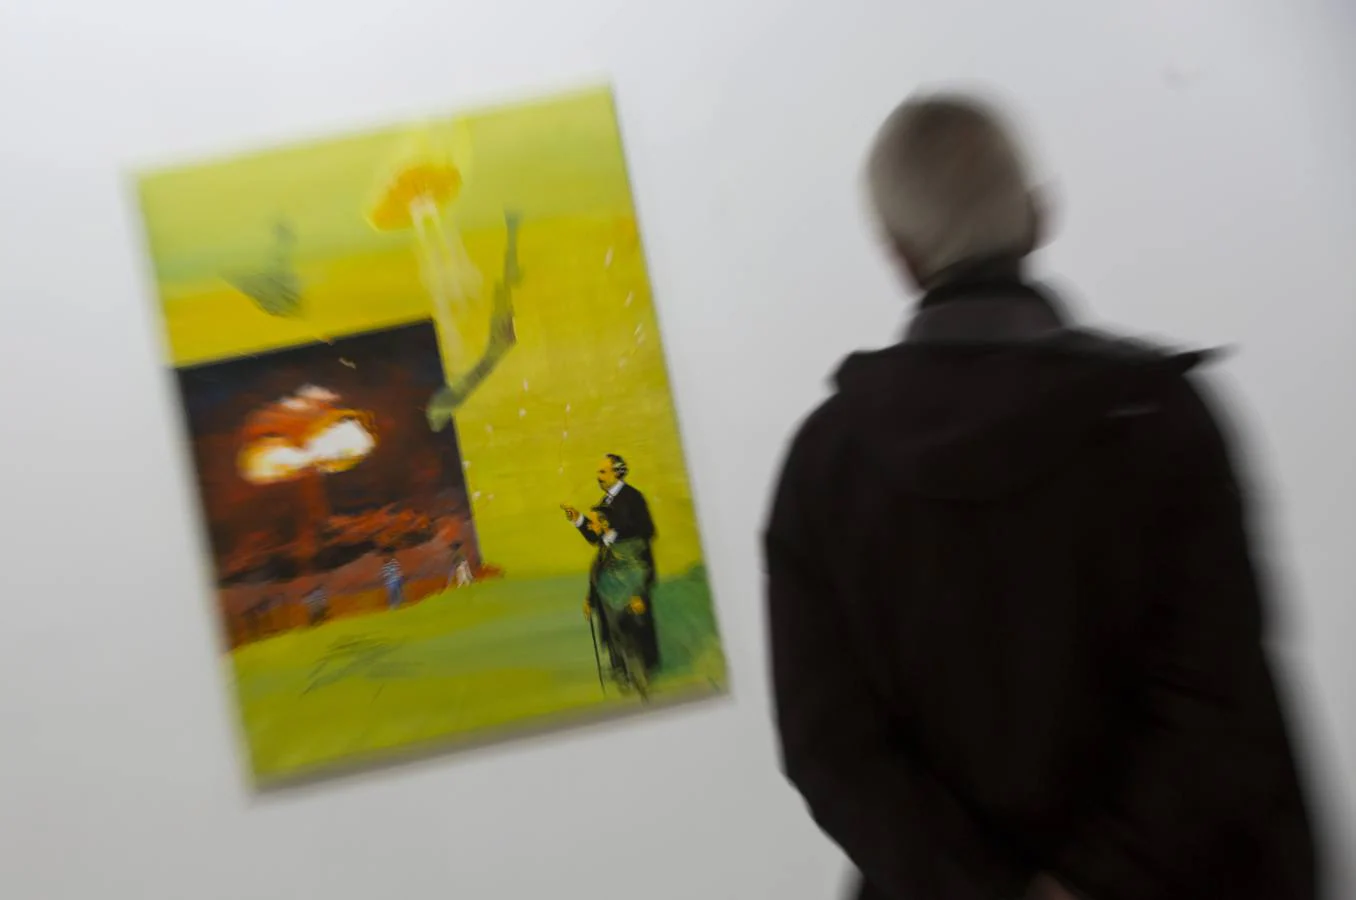 El artista vallisoletano expone dieciséis óleos en la muestra '184-159'